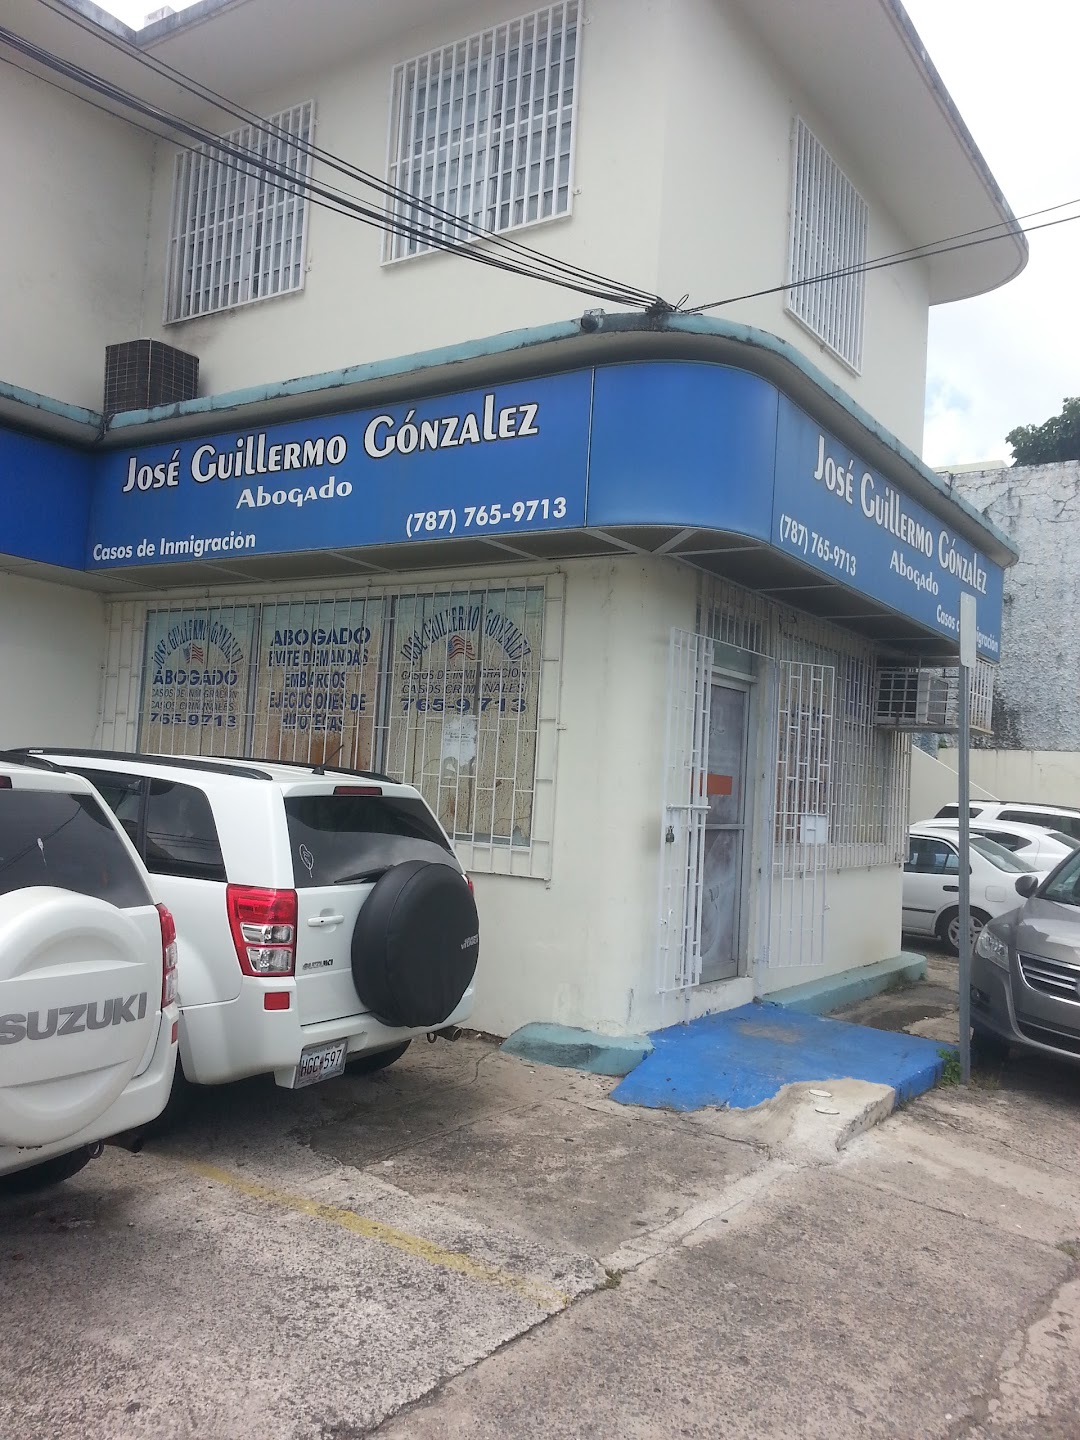 Jose Guillermo Gonzalez Law Office